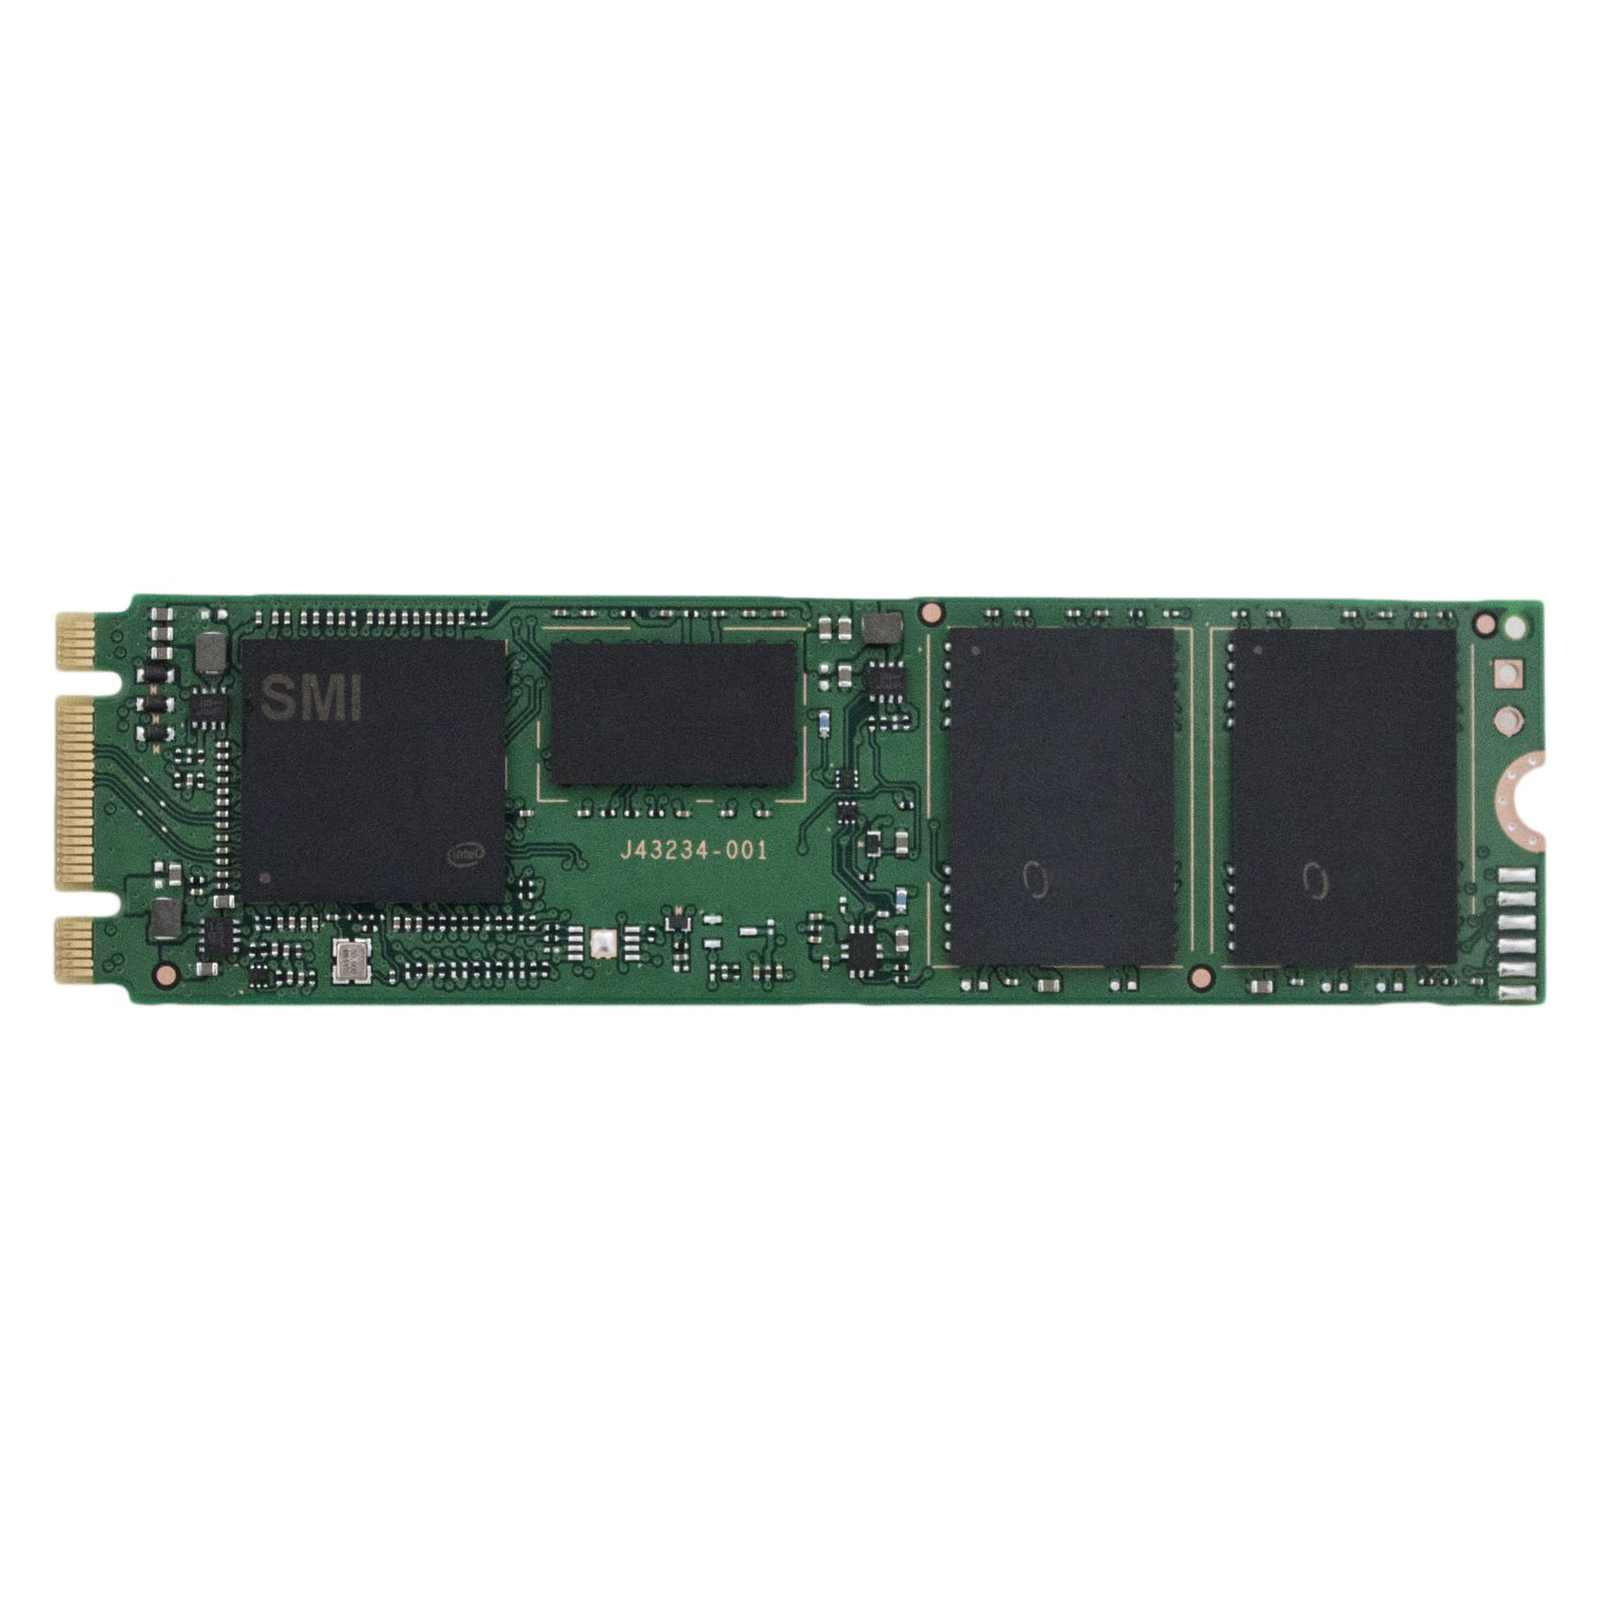 Накопитель SSD M.2 2280 512GB INTEL (SSDSCKKW512G8X1)